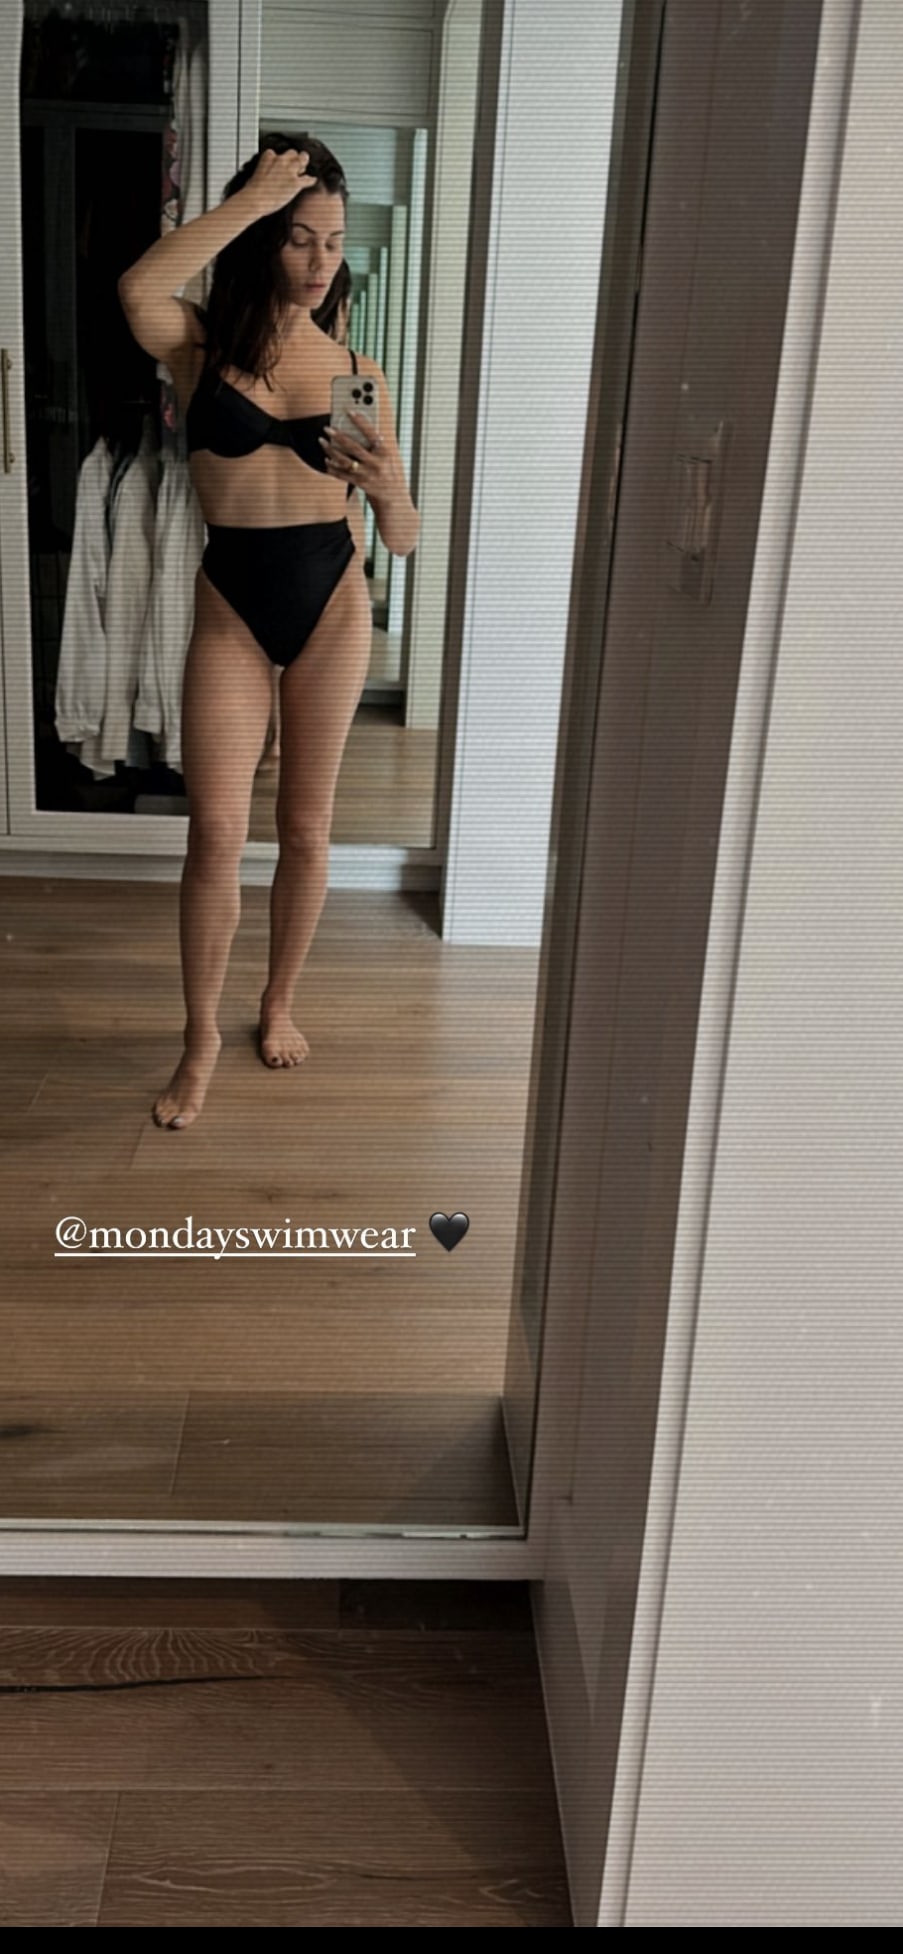 Jenna Dewan sizzled in her swimsuit selfie